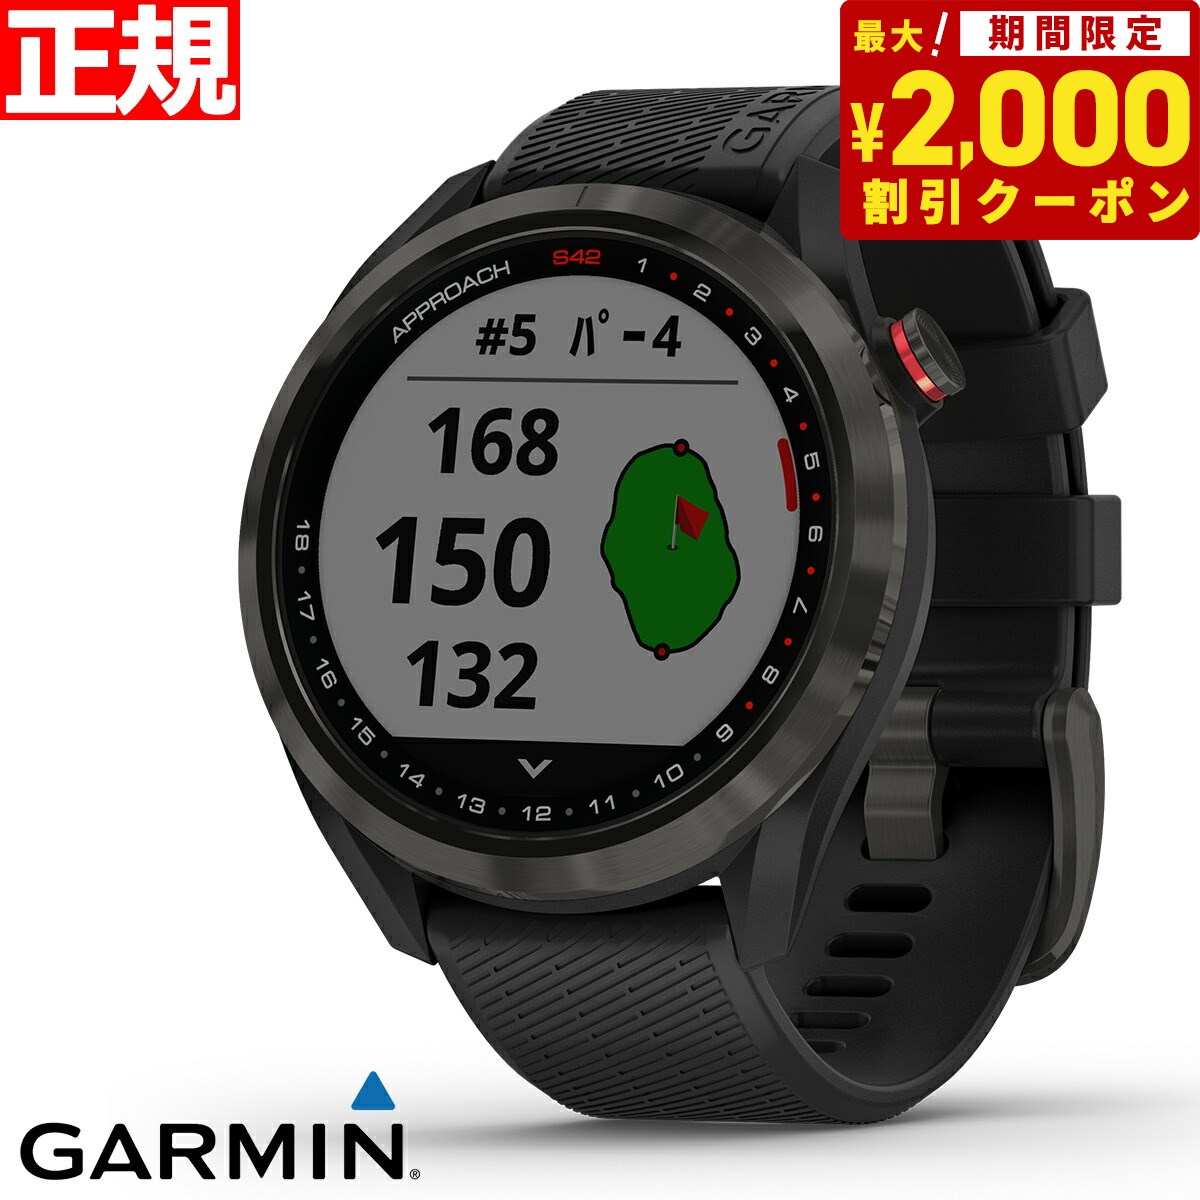 【24回分割手数料無料！】ガーミン GARMIN スマートウォッチ Approach S42 Black/Carbon Gray アプローチ S42 ブラック/カーボングレー ゴルフ GPS ウェアラブル 腕時計 010-02572-20